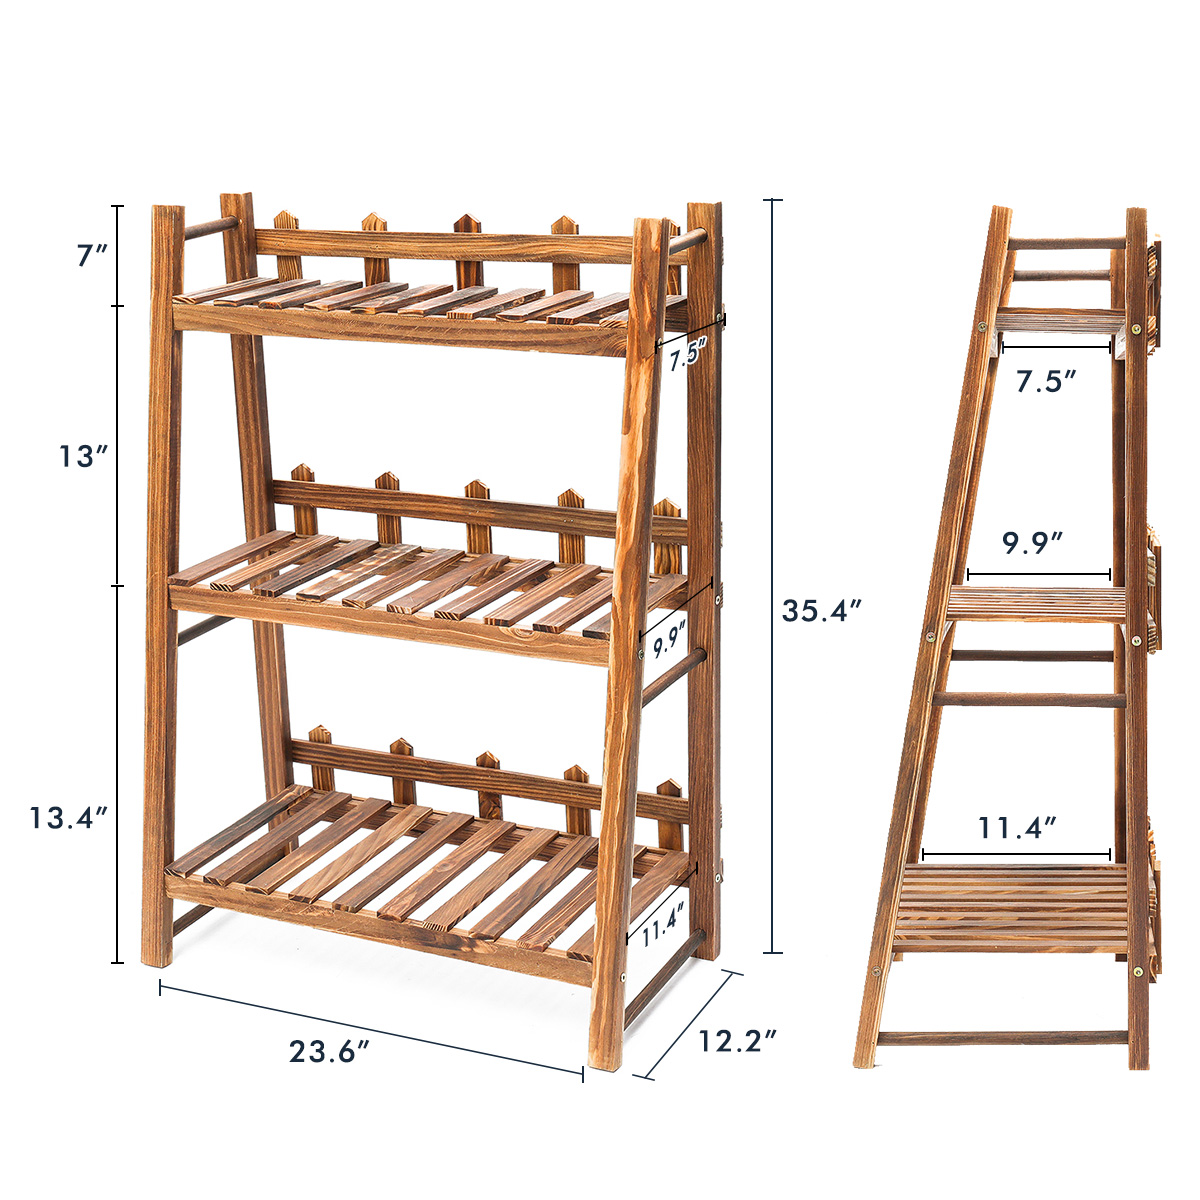 Heavy-Duty-Wood-3-Tier-Plant-Stand-Shelf-Indoor-Outdoor-Flower-Pot-Rack-Holder-Rack-1605063